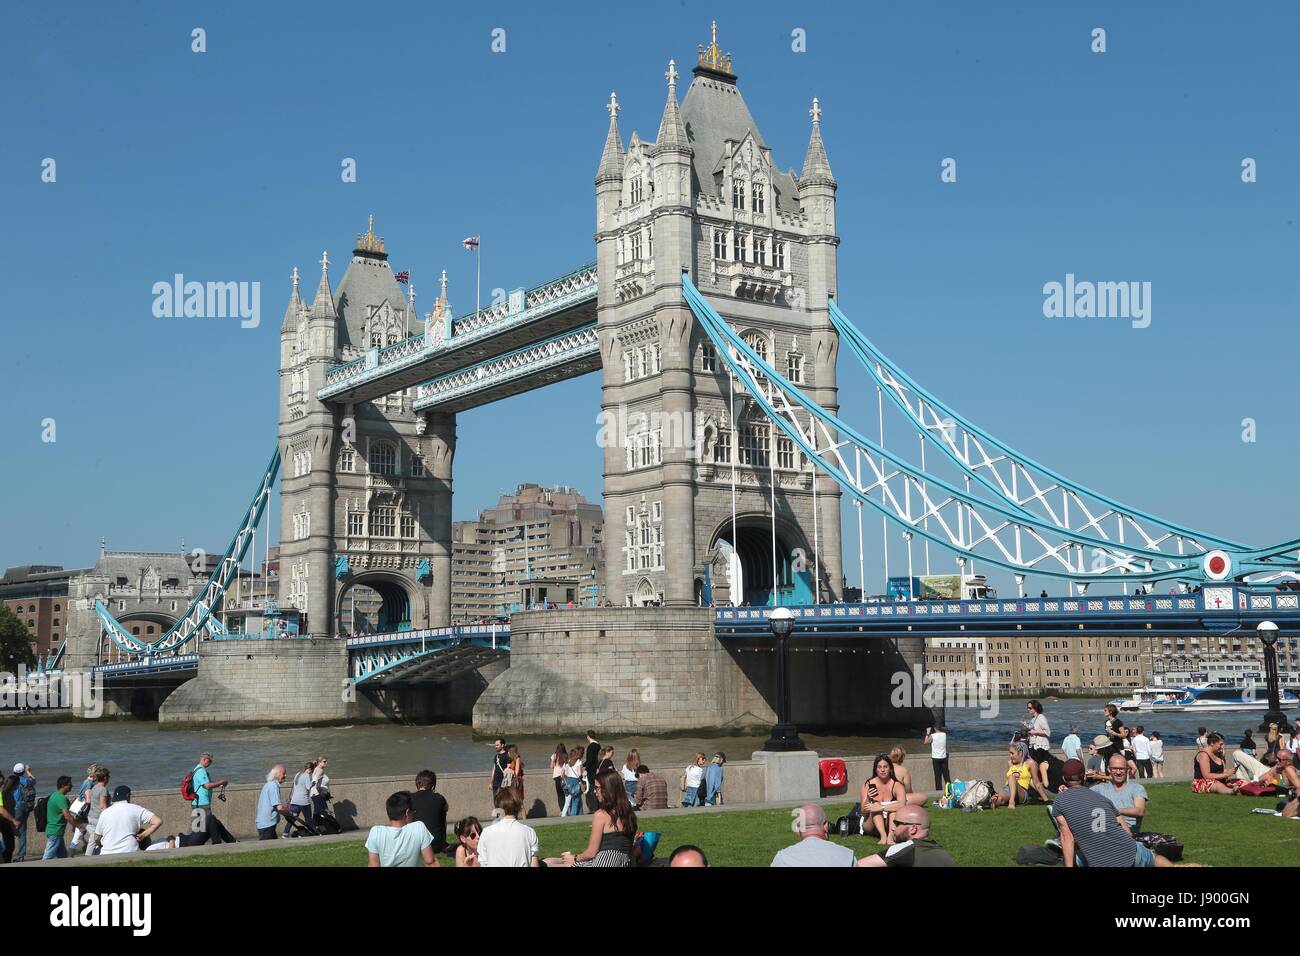 Die berühmte Tower Bridge in London, eines der berühmtesten Gebäude in der Welt, die vor über 120 Jahren gebaut wurde. Stockfoto